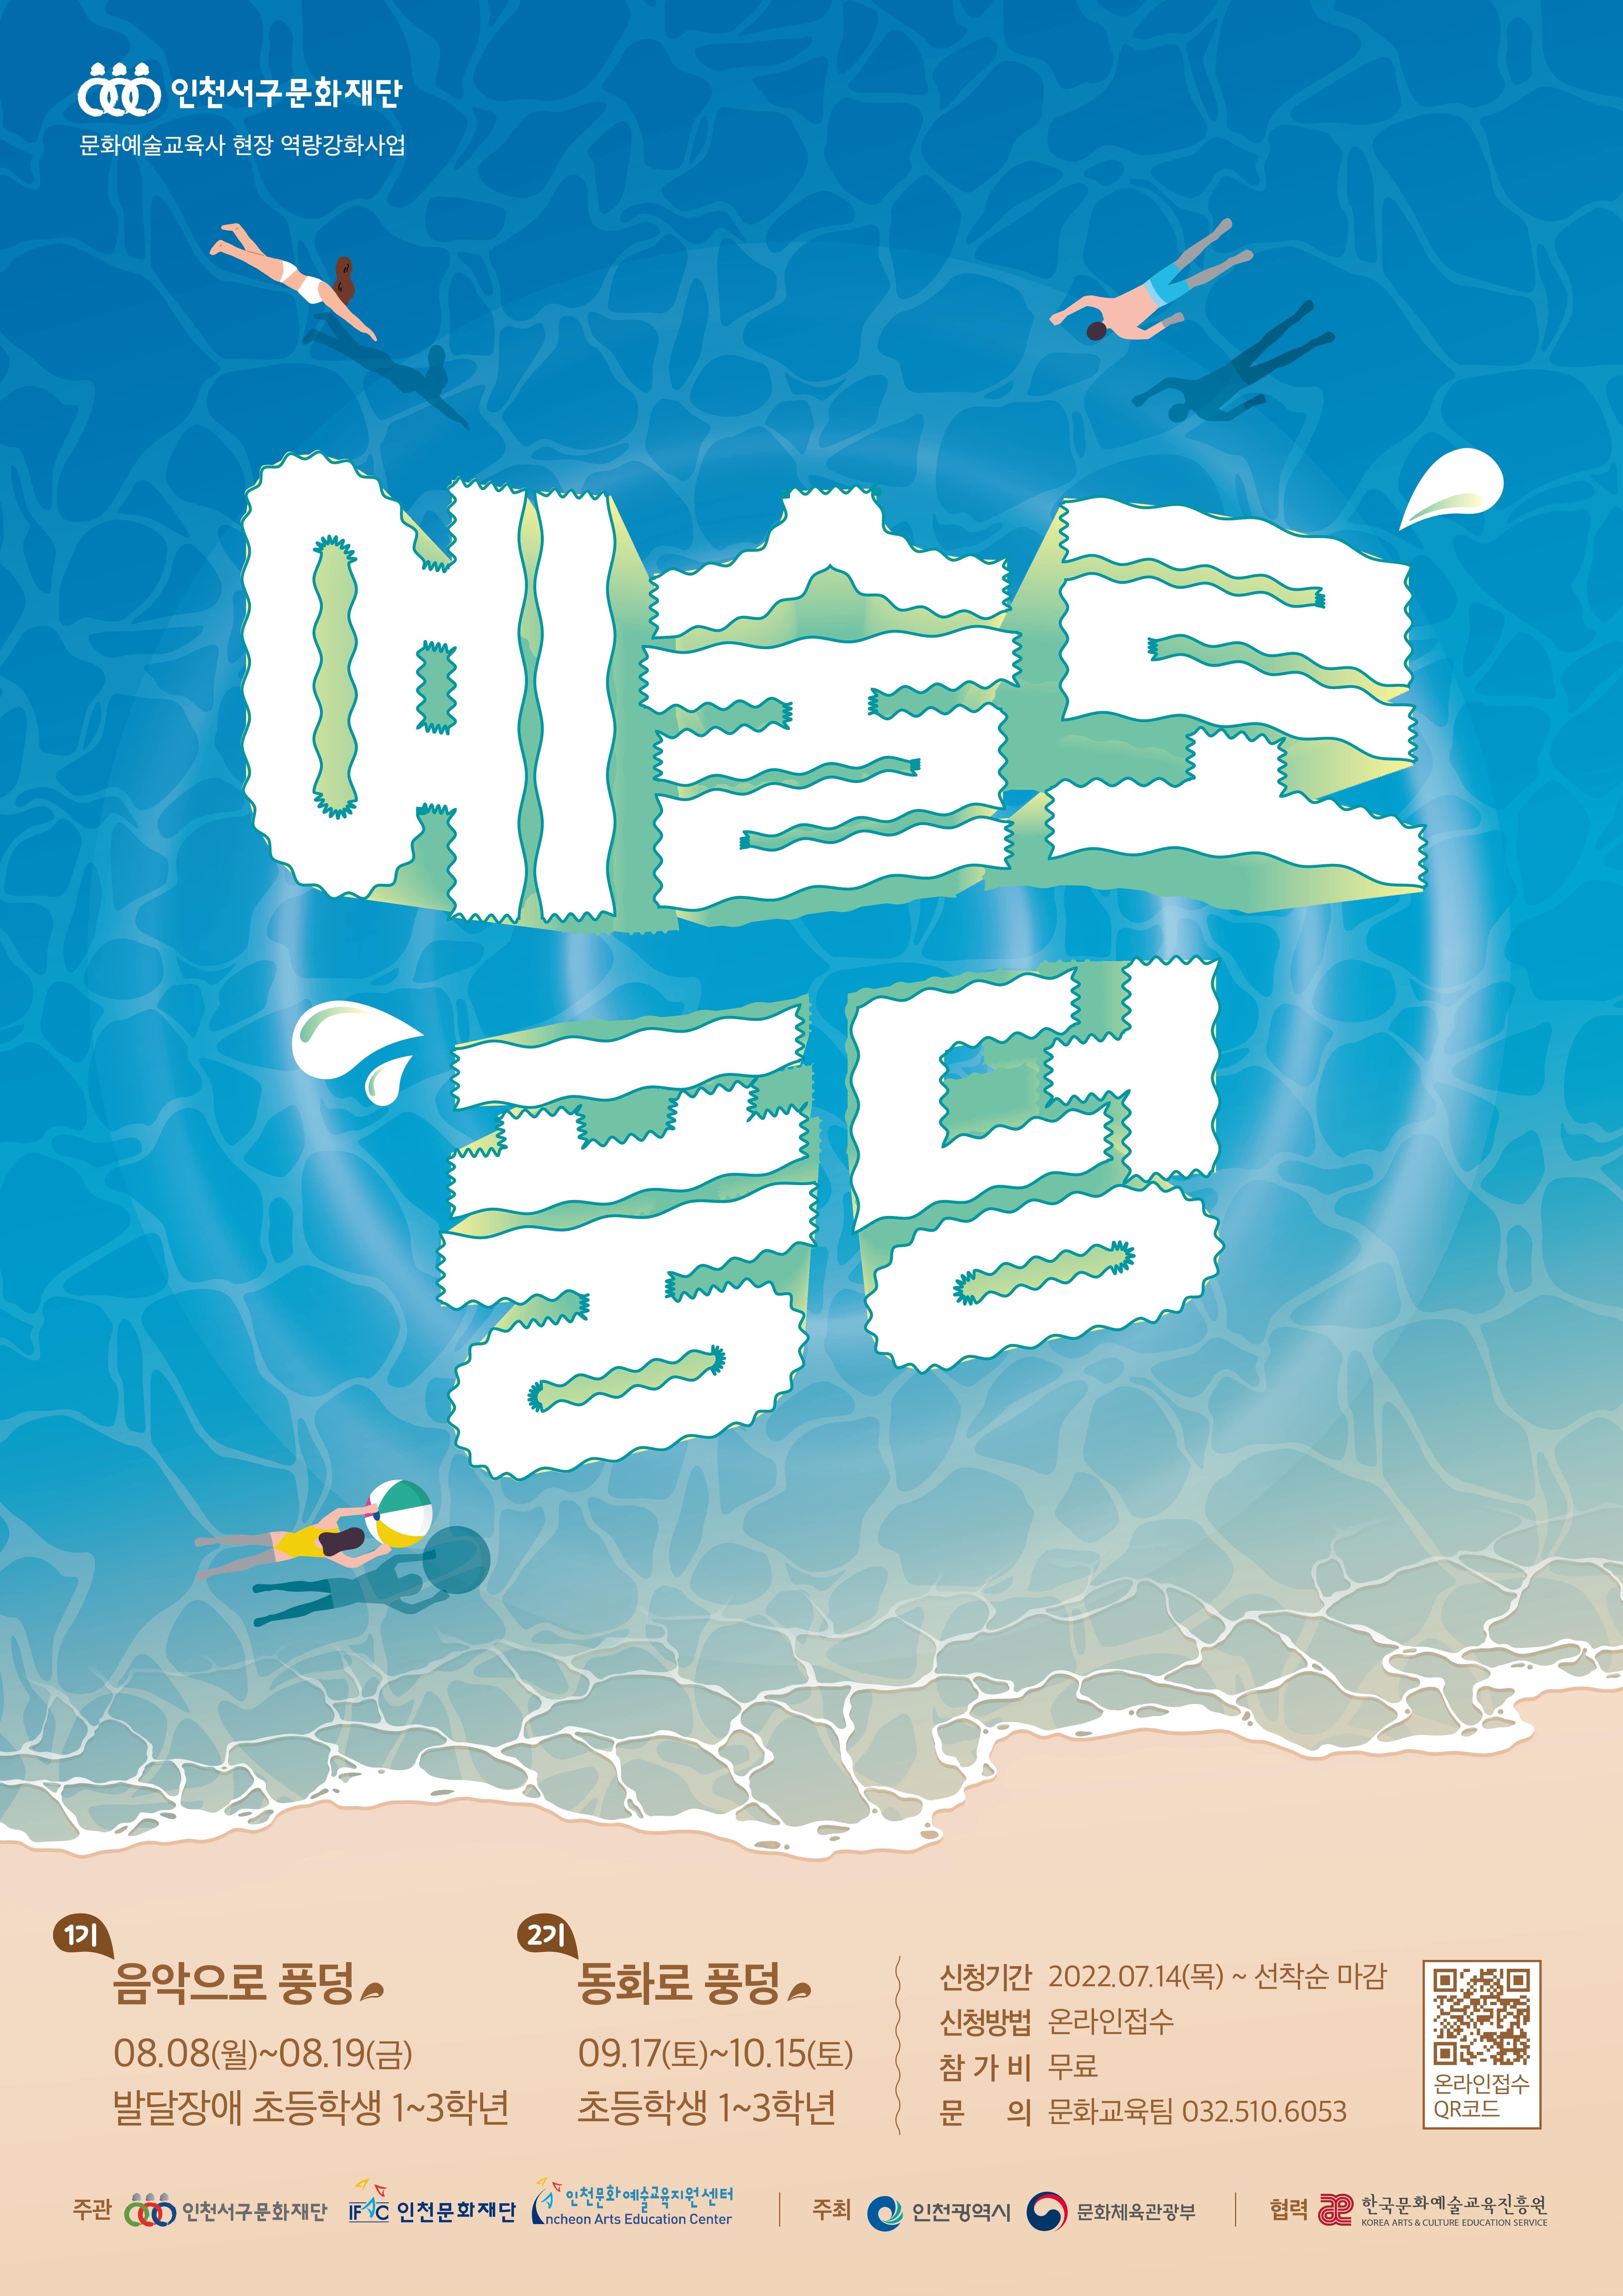 [인천서구문화재단] 문화예술교육프로그램 「예술로 풍덩」 참여자 모집 안내 포스터 이미지